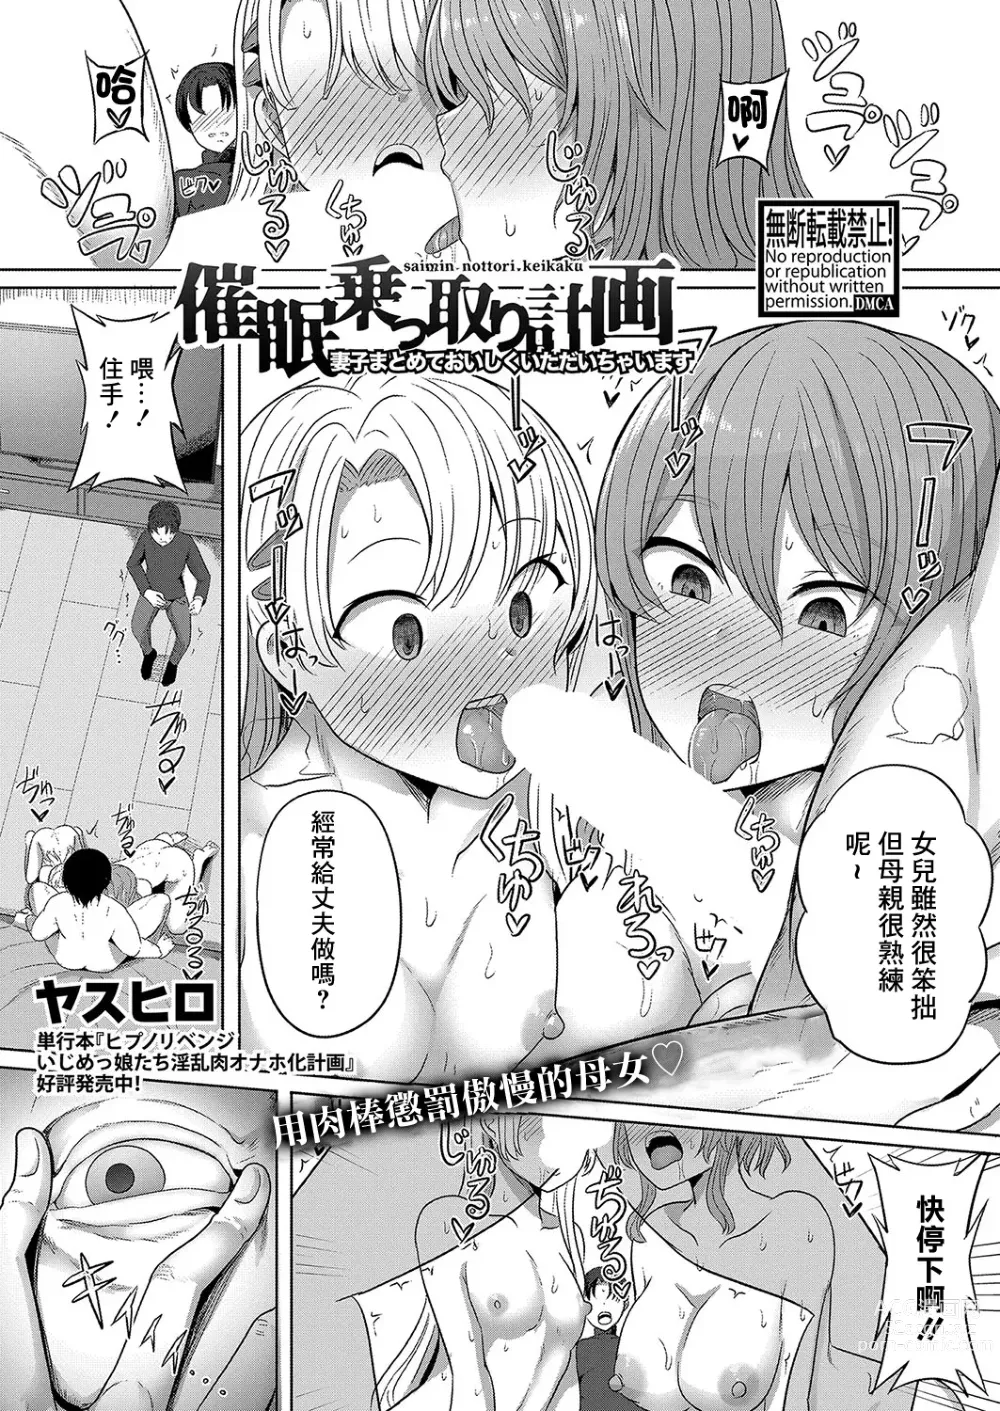 Page 1 of manga Saimin  Nottori Keikaku  Saishi Matomete  Oishiku Itadaichaimasu